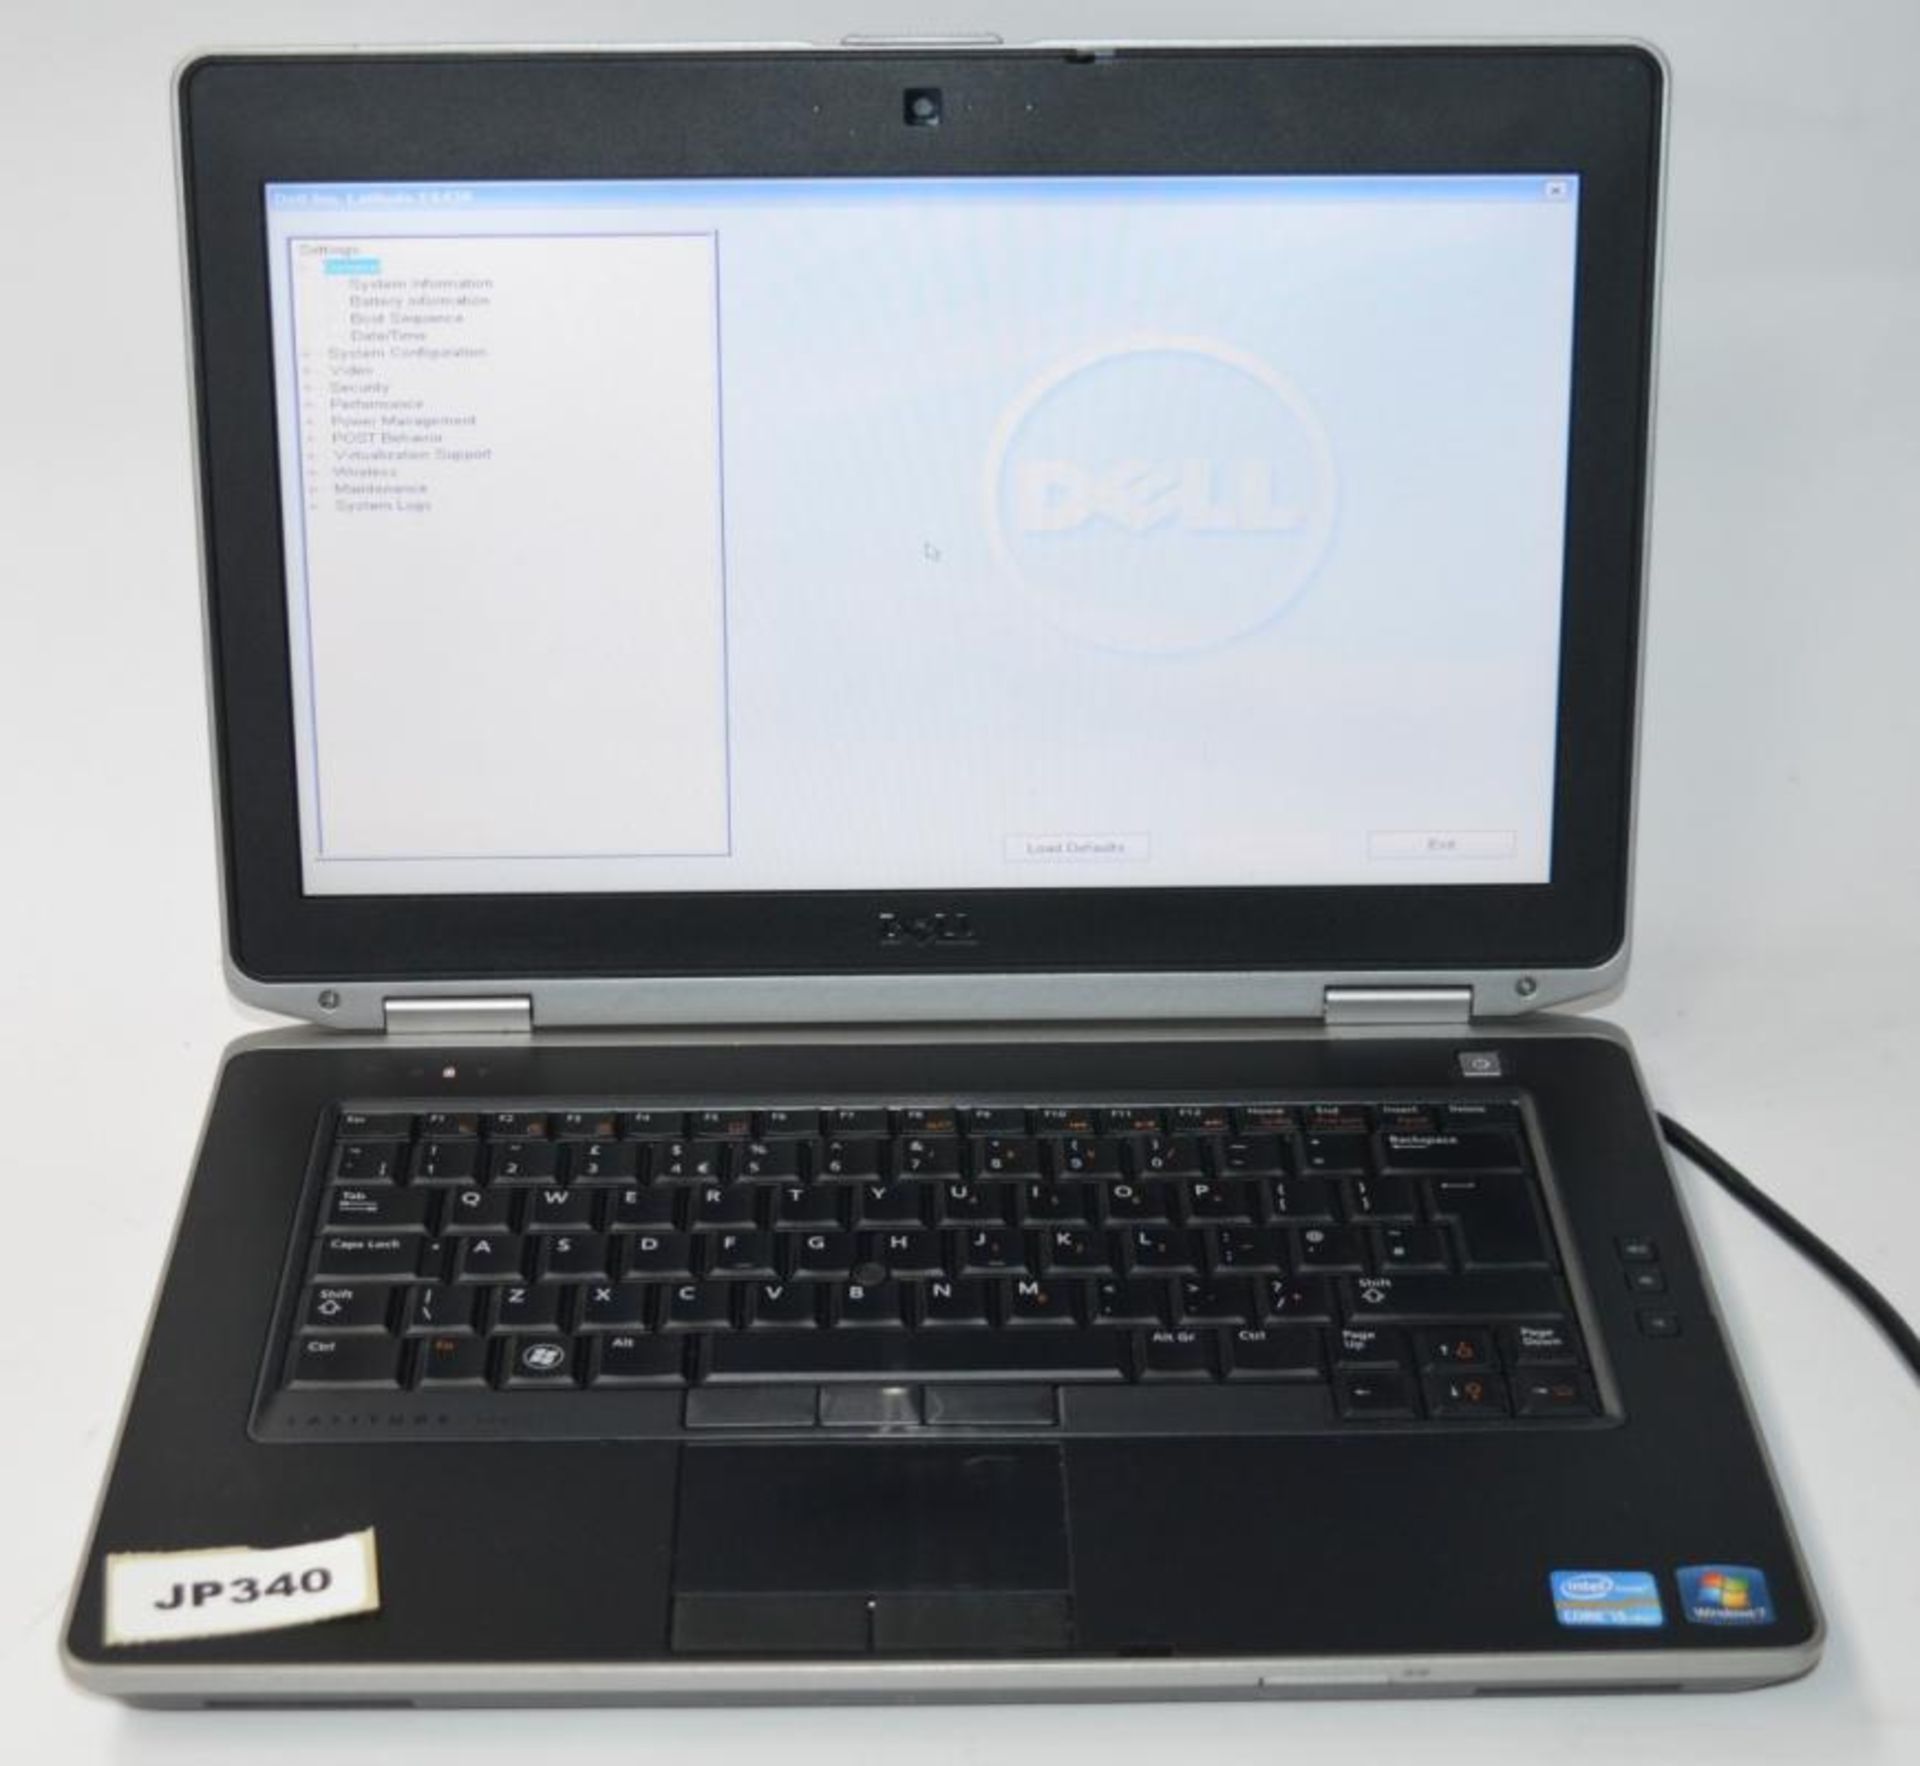 1 x Dell Latitude E6430 Laptop Computer - 14 Inch Screen - Features Intel Core i5 2.6ghz Processor a